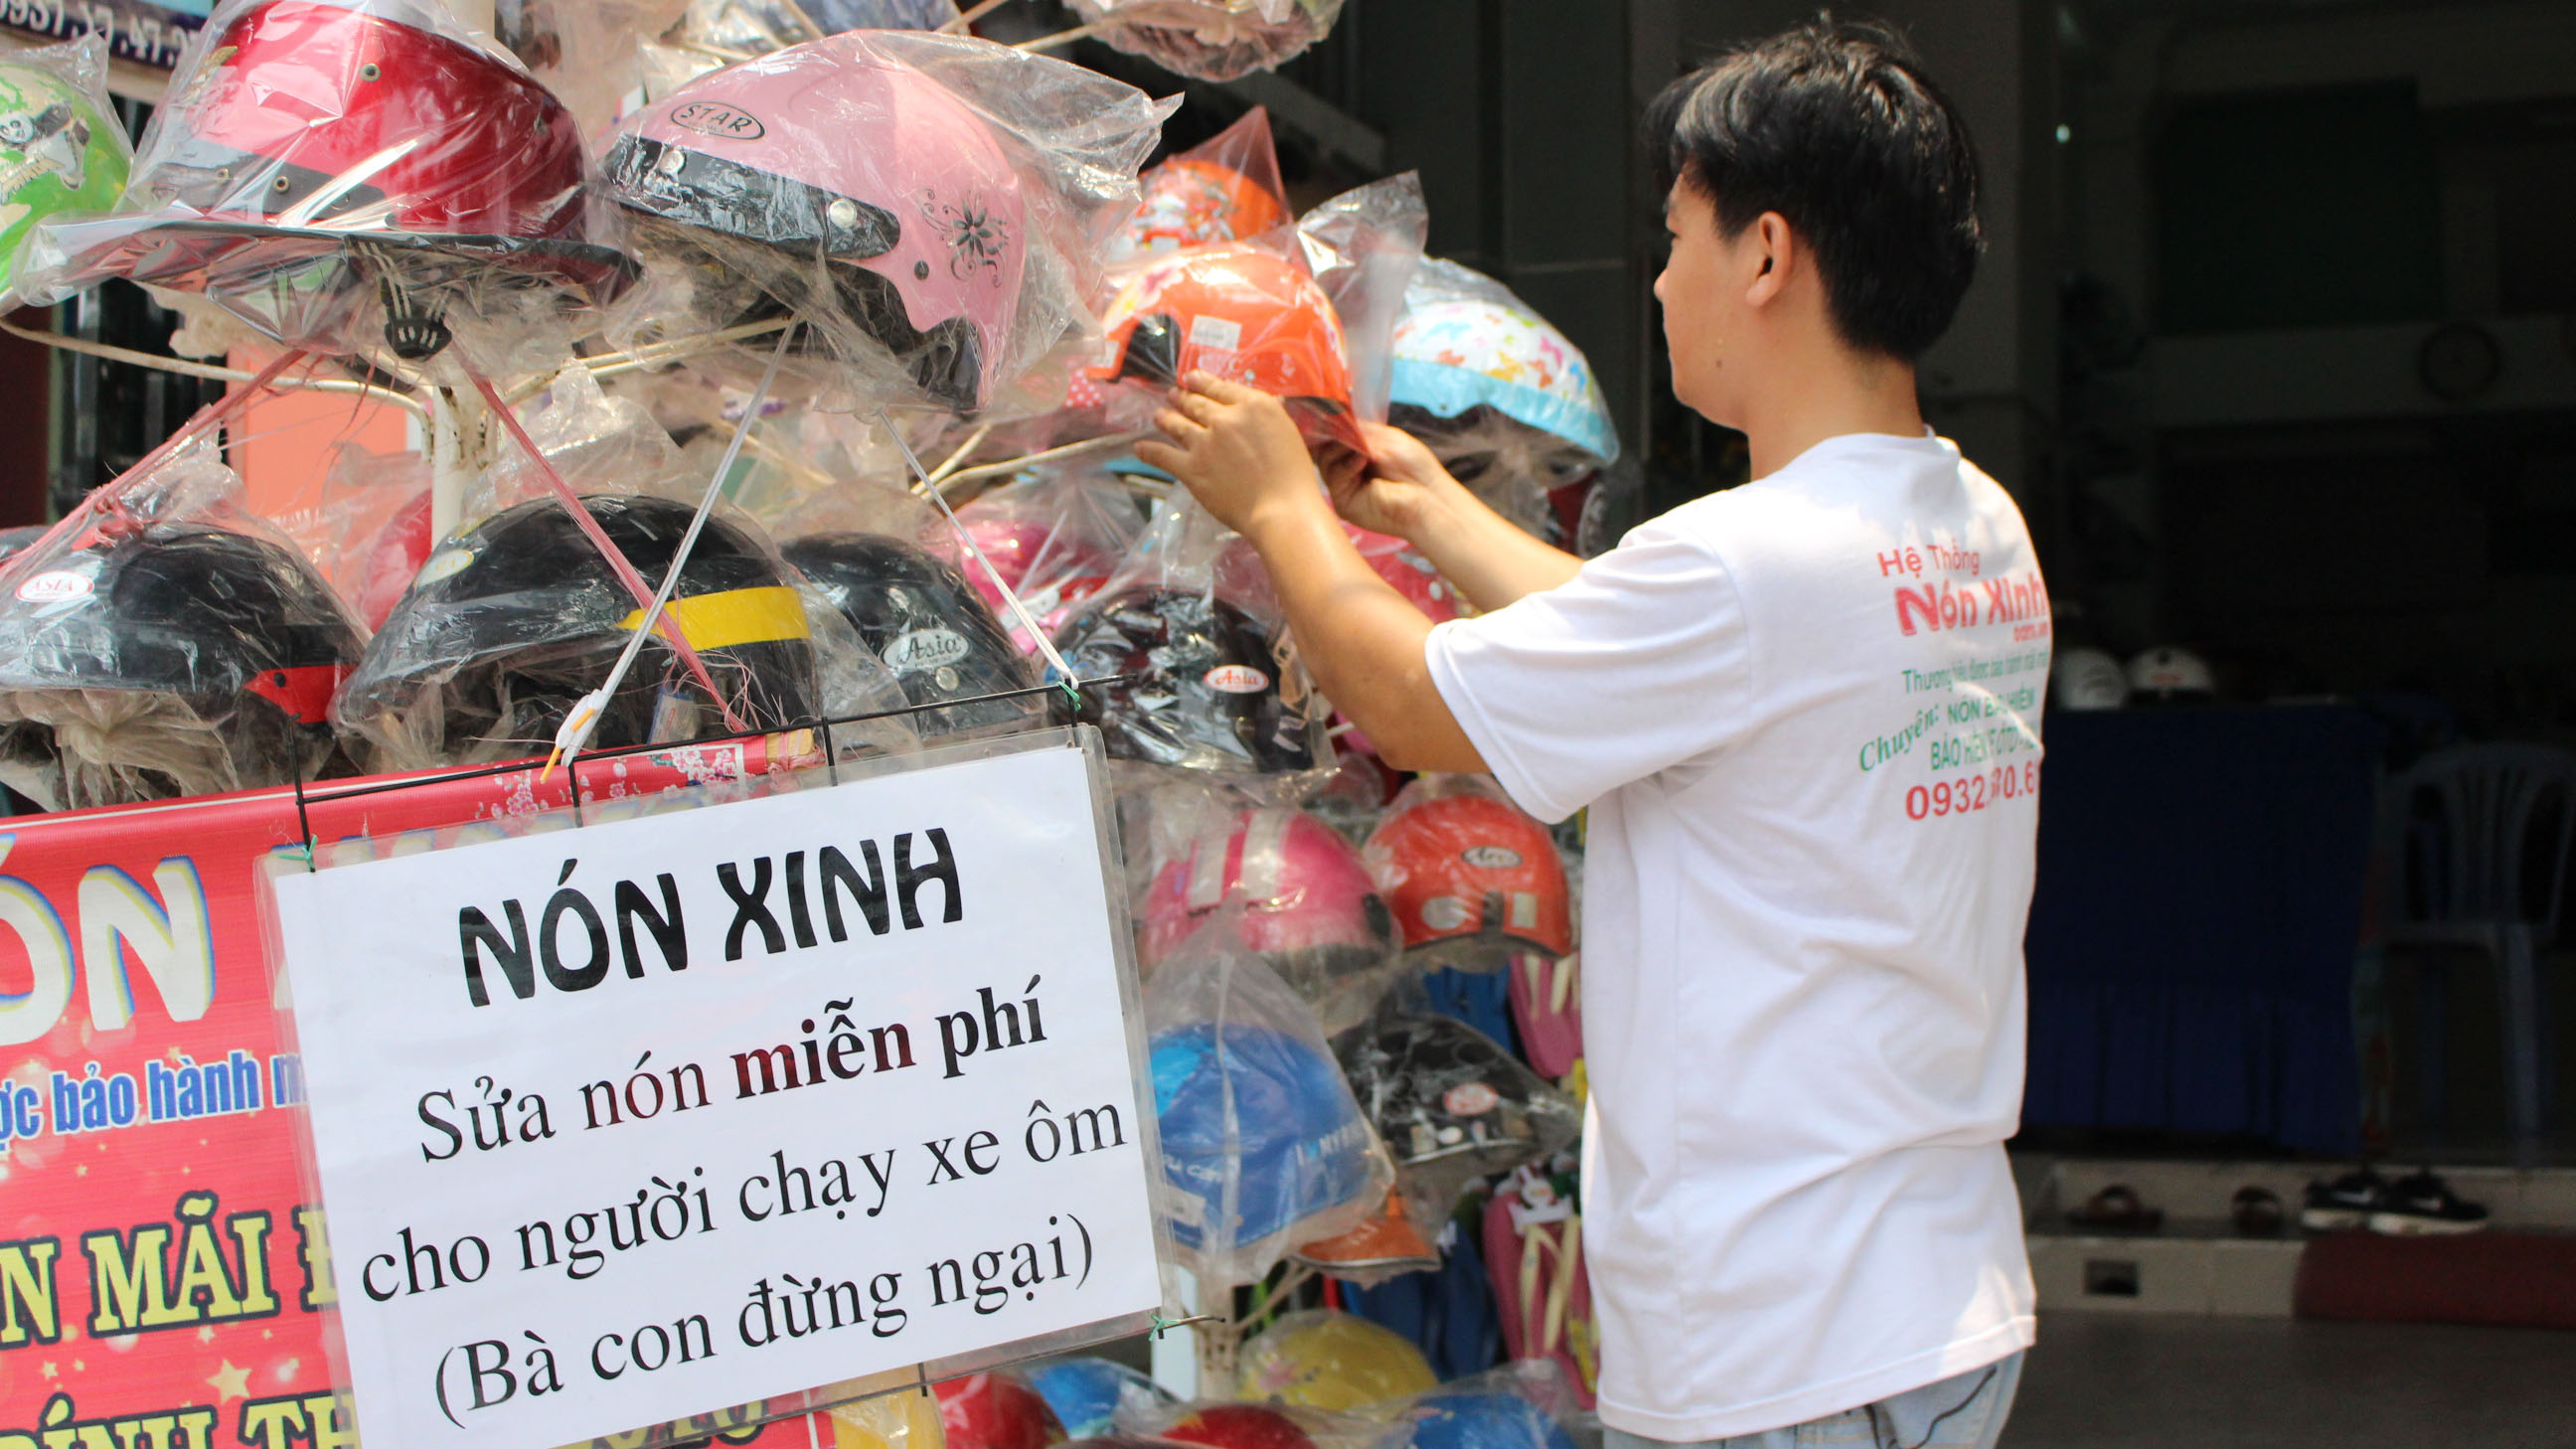 Tất cả các cửa hàng của chị Hồng Nương đều treo bảng sửa nón miễn phí - Ảnh: Vũ Phượng